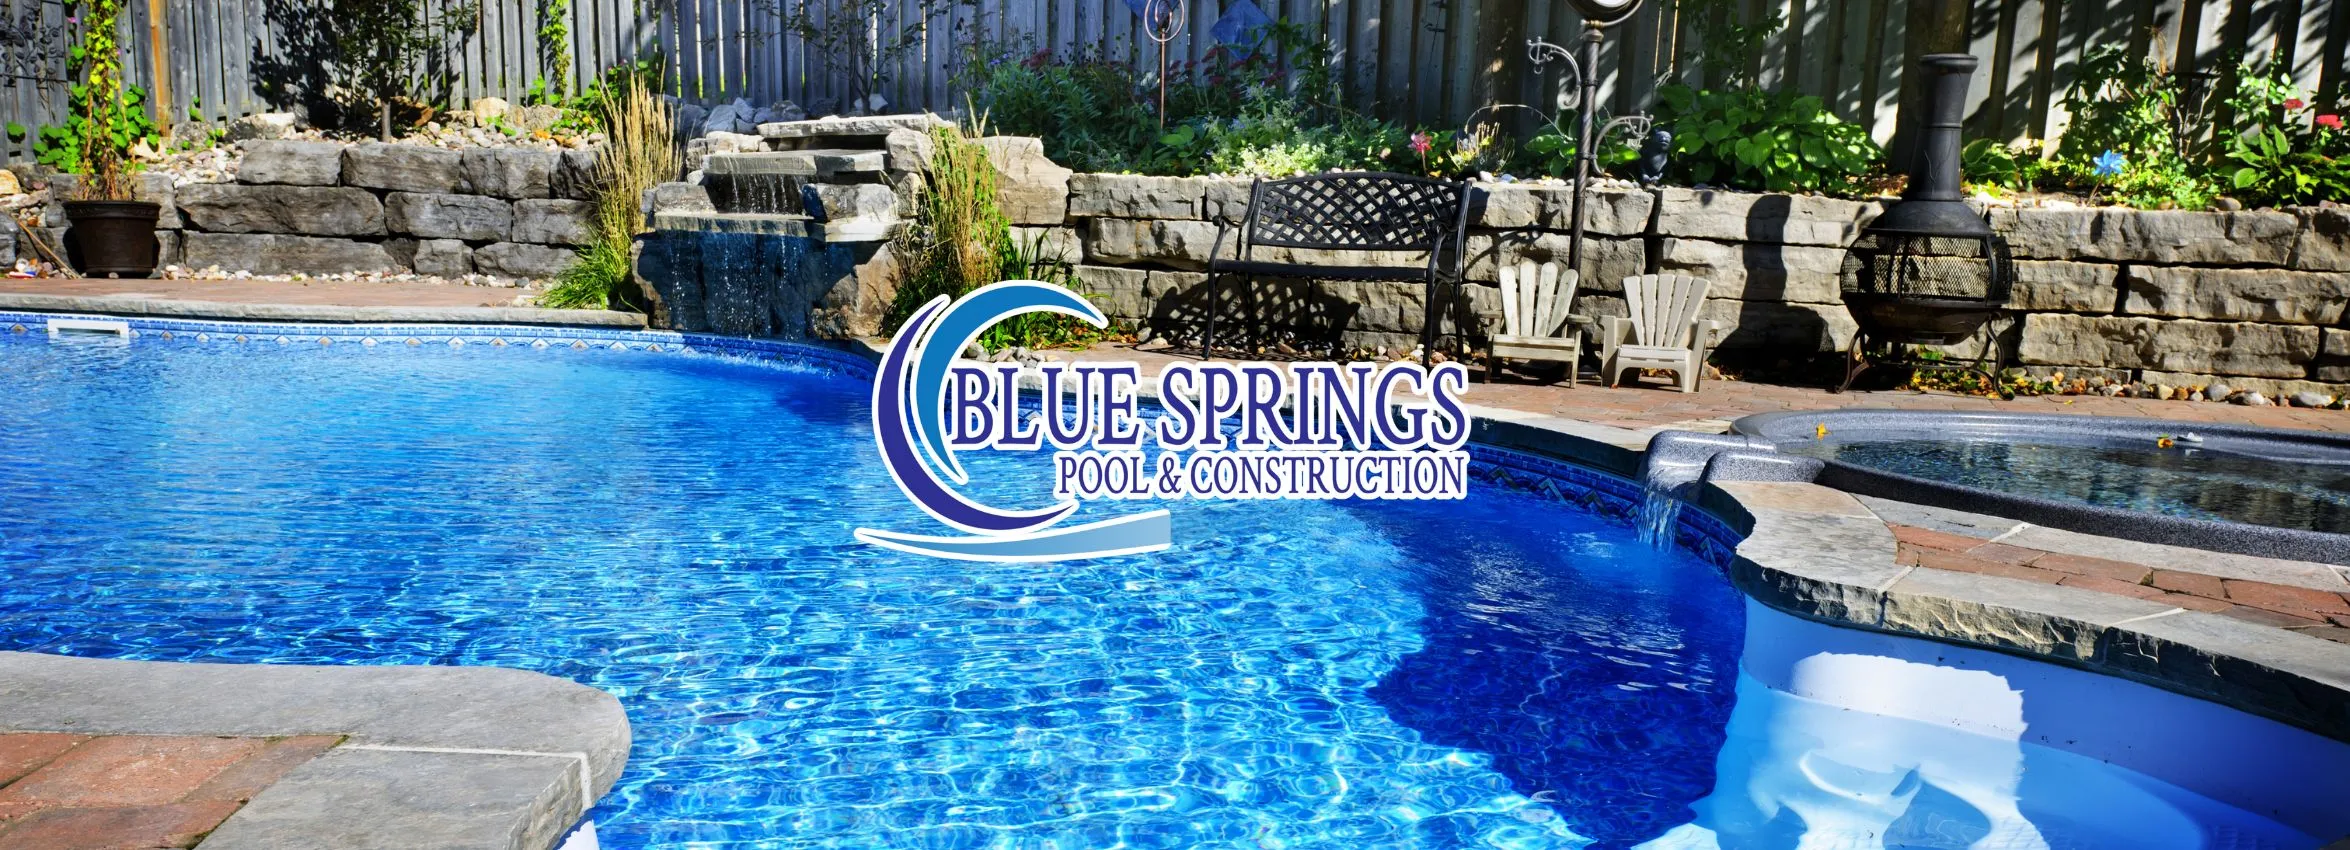 Blue-Springs-Pool-_-Construction_Desktop_ET